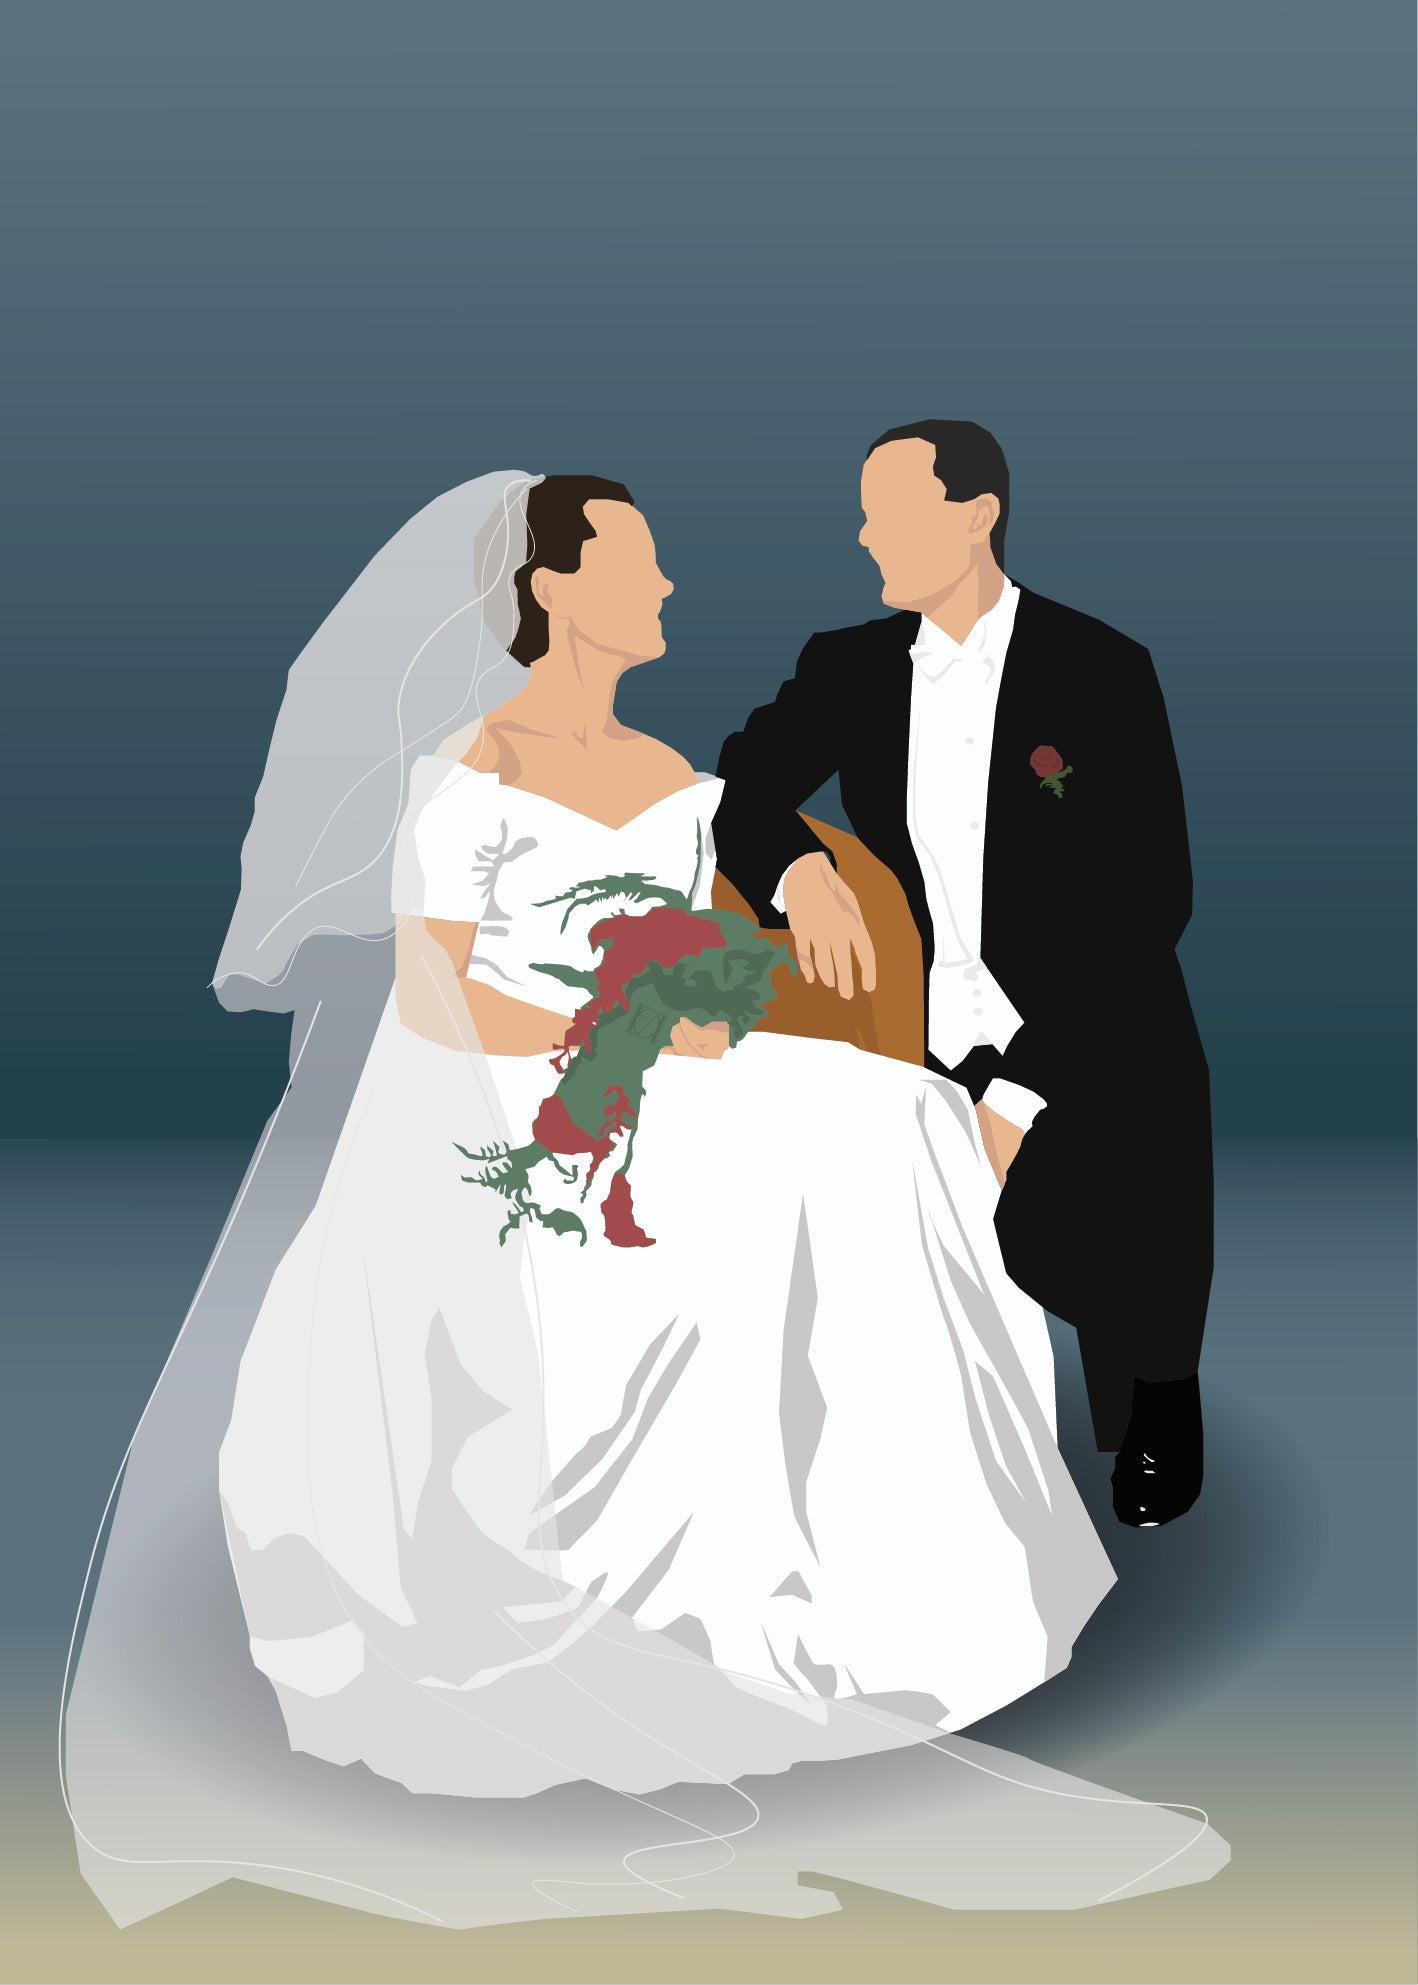 Personlig illustrert plakat av et brudepar. Bruden sitter på en stol og kikker på brudgommen. Begge smiler selv om de ikke har ansikt. Fargene går fra gult på gulvet til blått på veggen. Bruden er kledd i hvit brudekjole og brudgommen i sort dress.